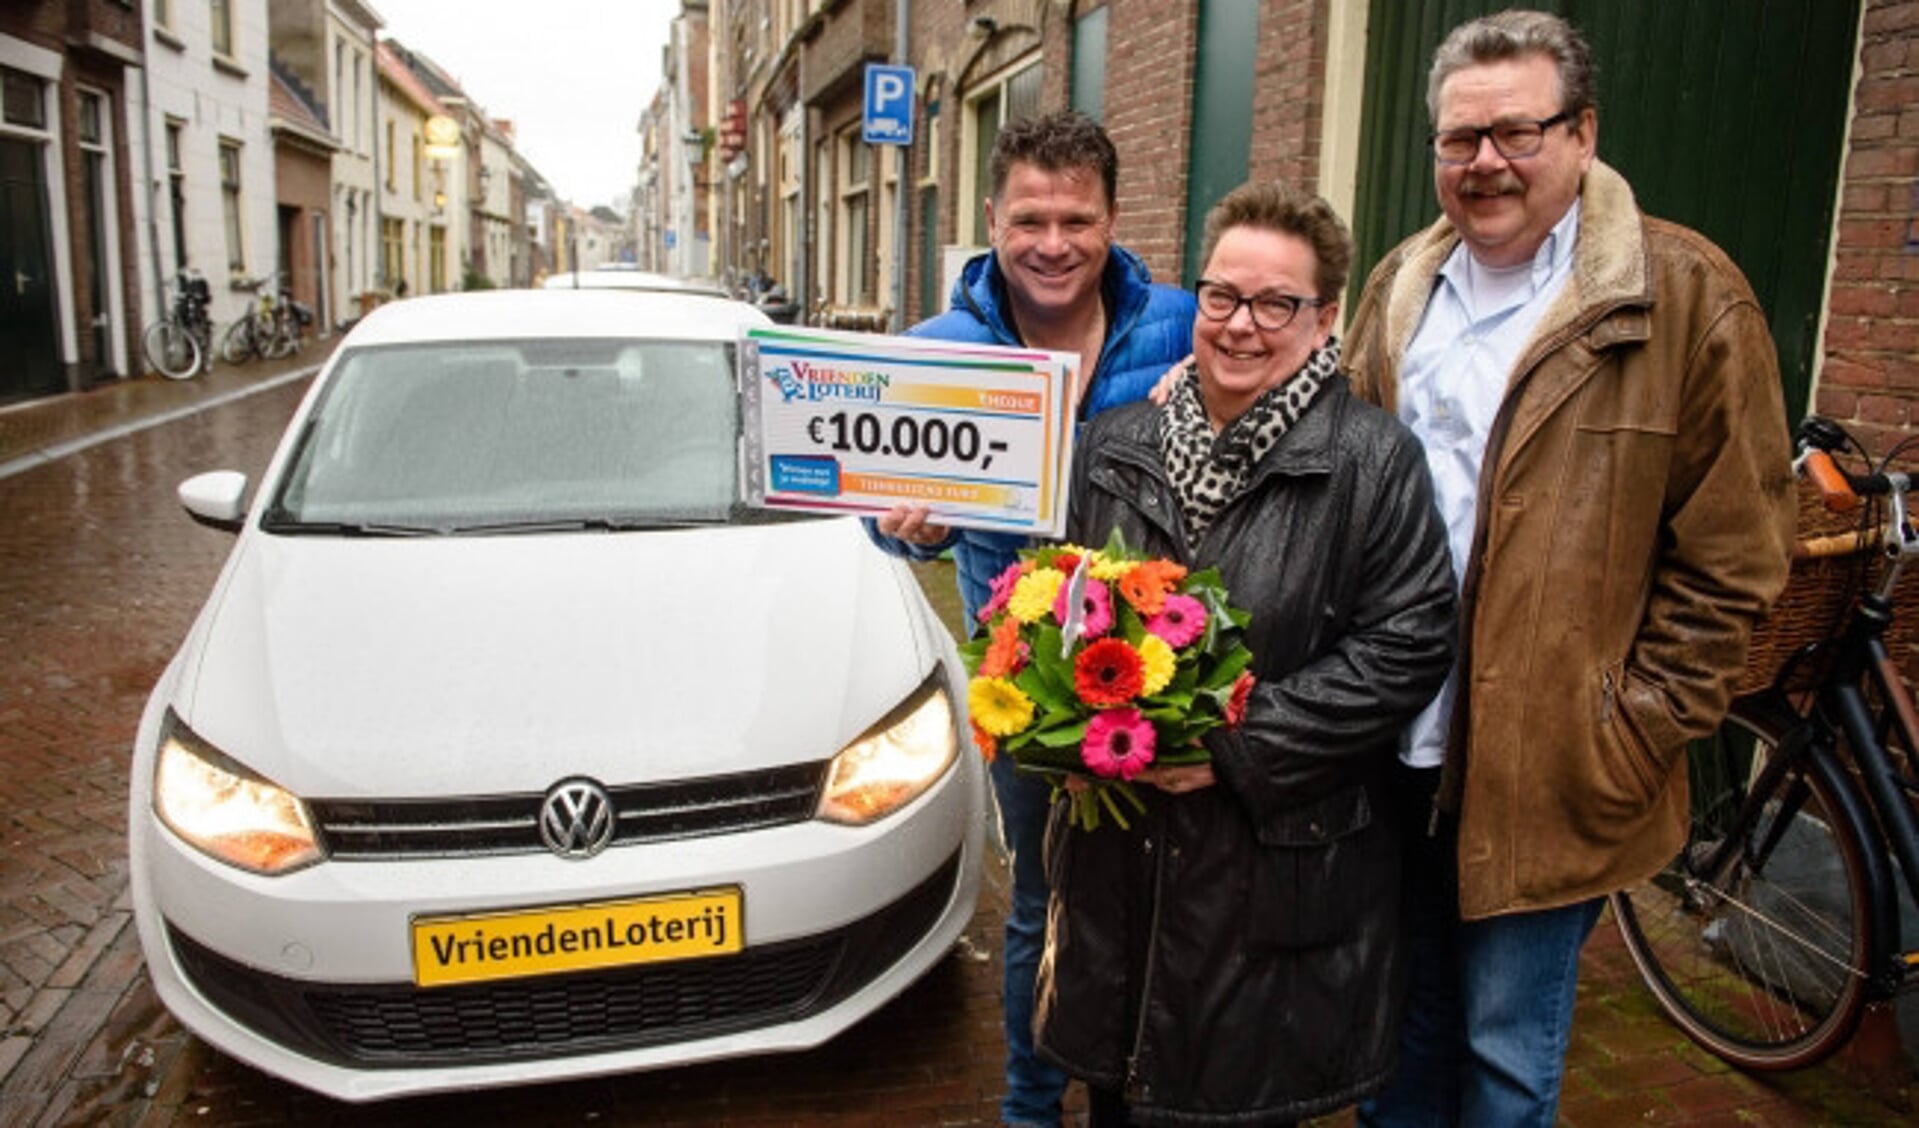  Jos van Ommen en echtgenoot Gert uit Kampen winnen 10.000 euro én een Volkswagen Polo bij de VriendenLoterij. Zij ontvangen de cheque en autosleutels uit handen van VriendenLoterij-ambassadeur Wolter Kroes.